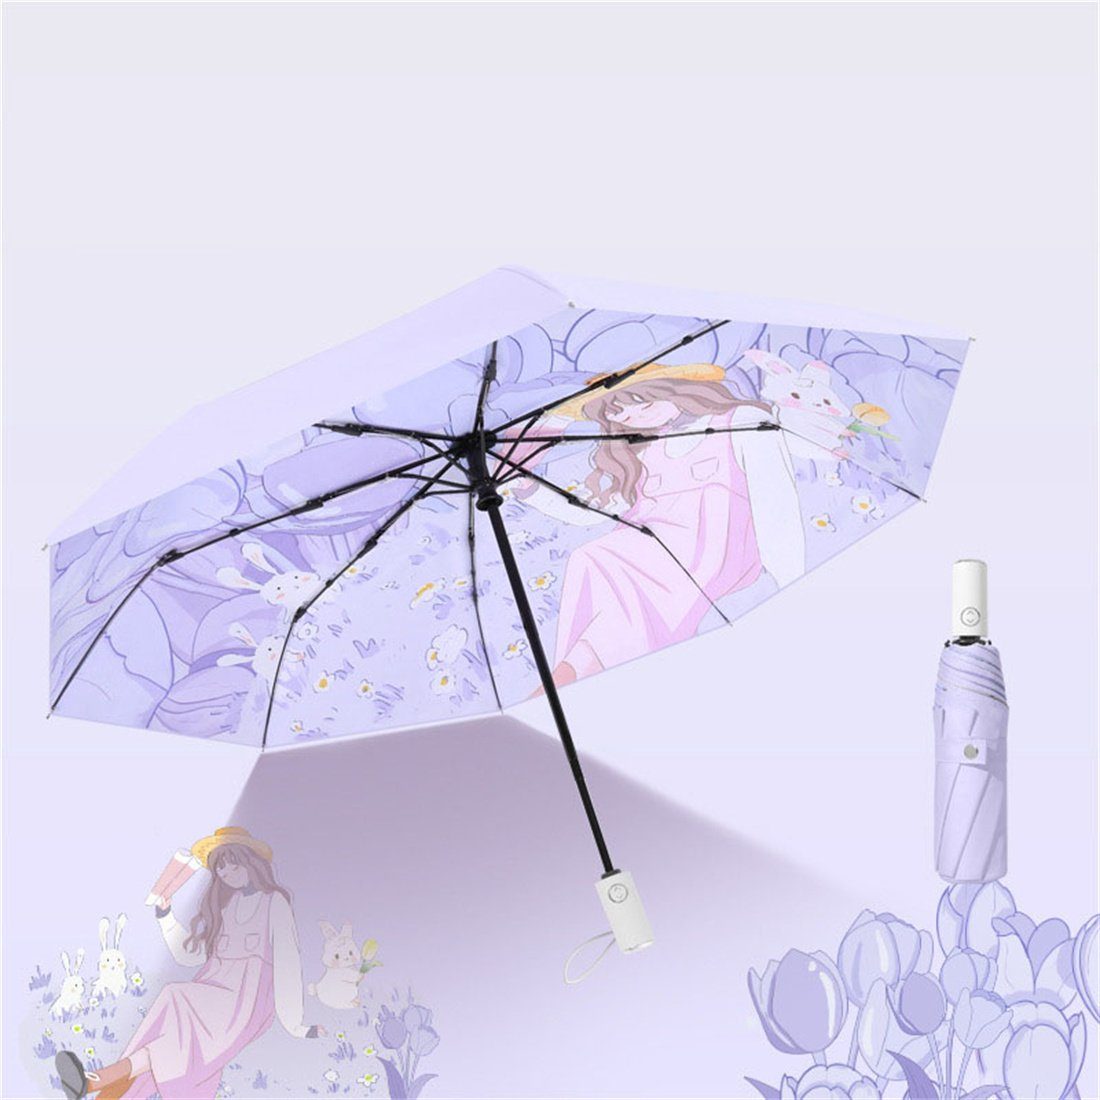 automatischer Taschenregenschirm DÖRÖY tragbarer Regenschirm,regenfest,winddicht Lila UV-Faltschirm,